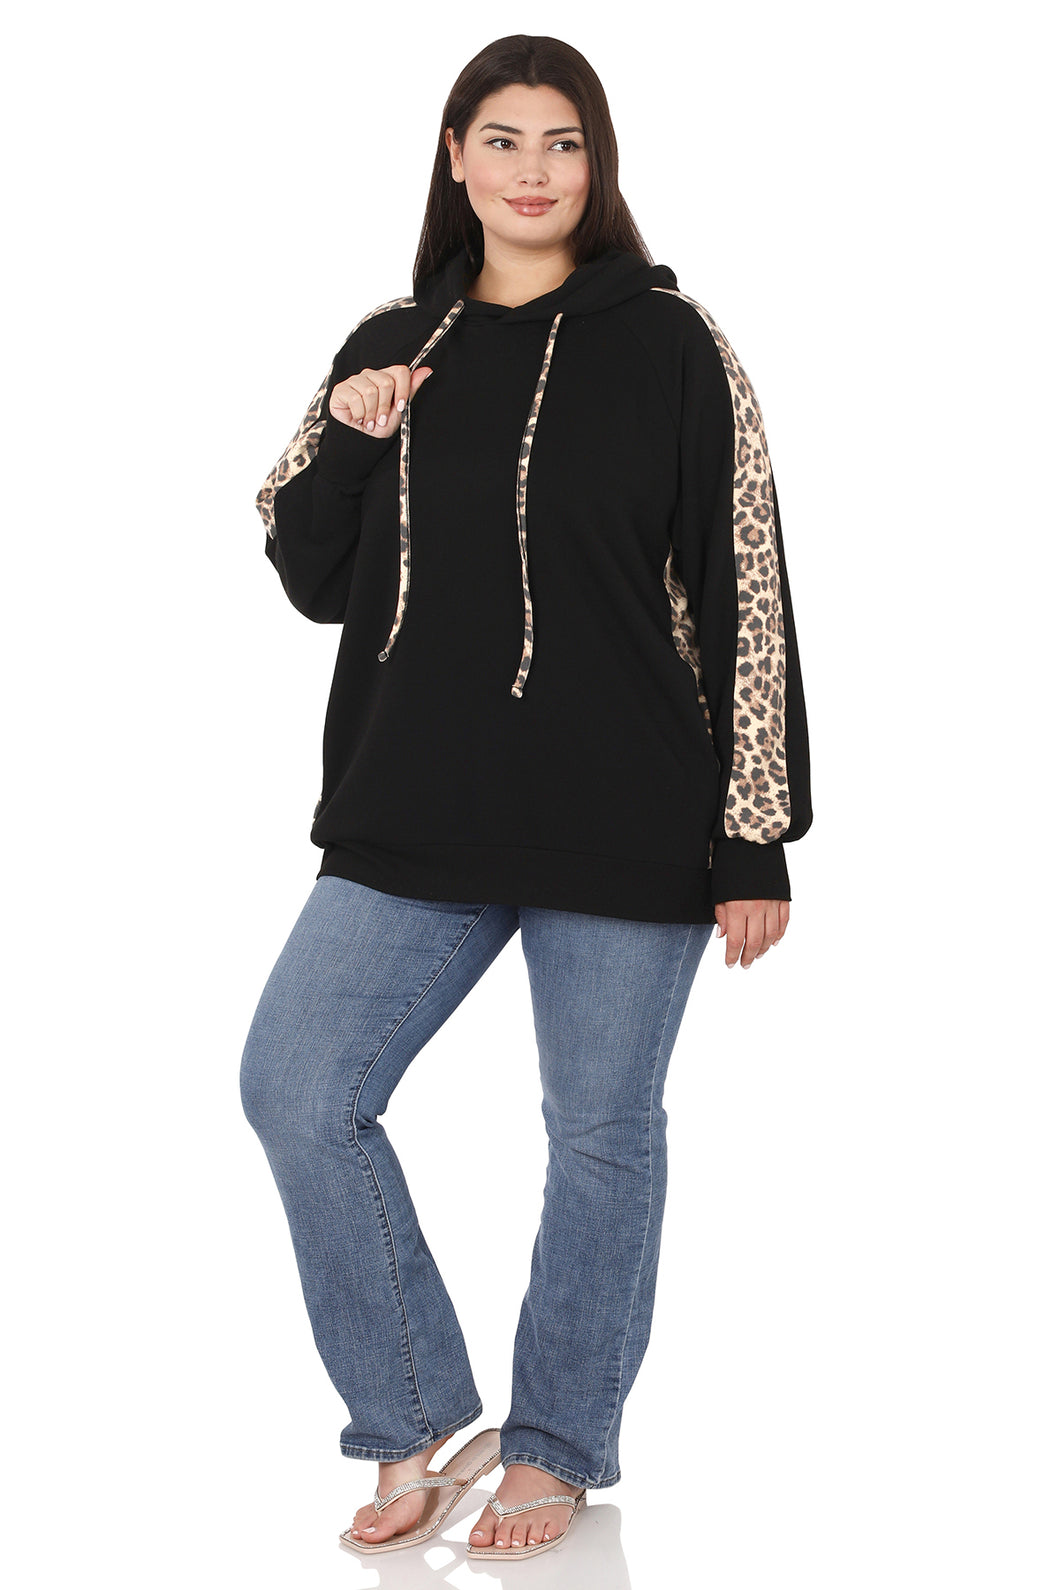 Long Sleeve Leopard Sweatshirt Black Size 2X